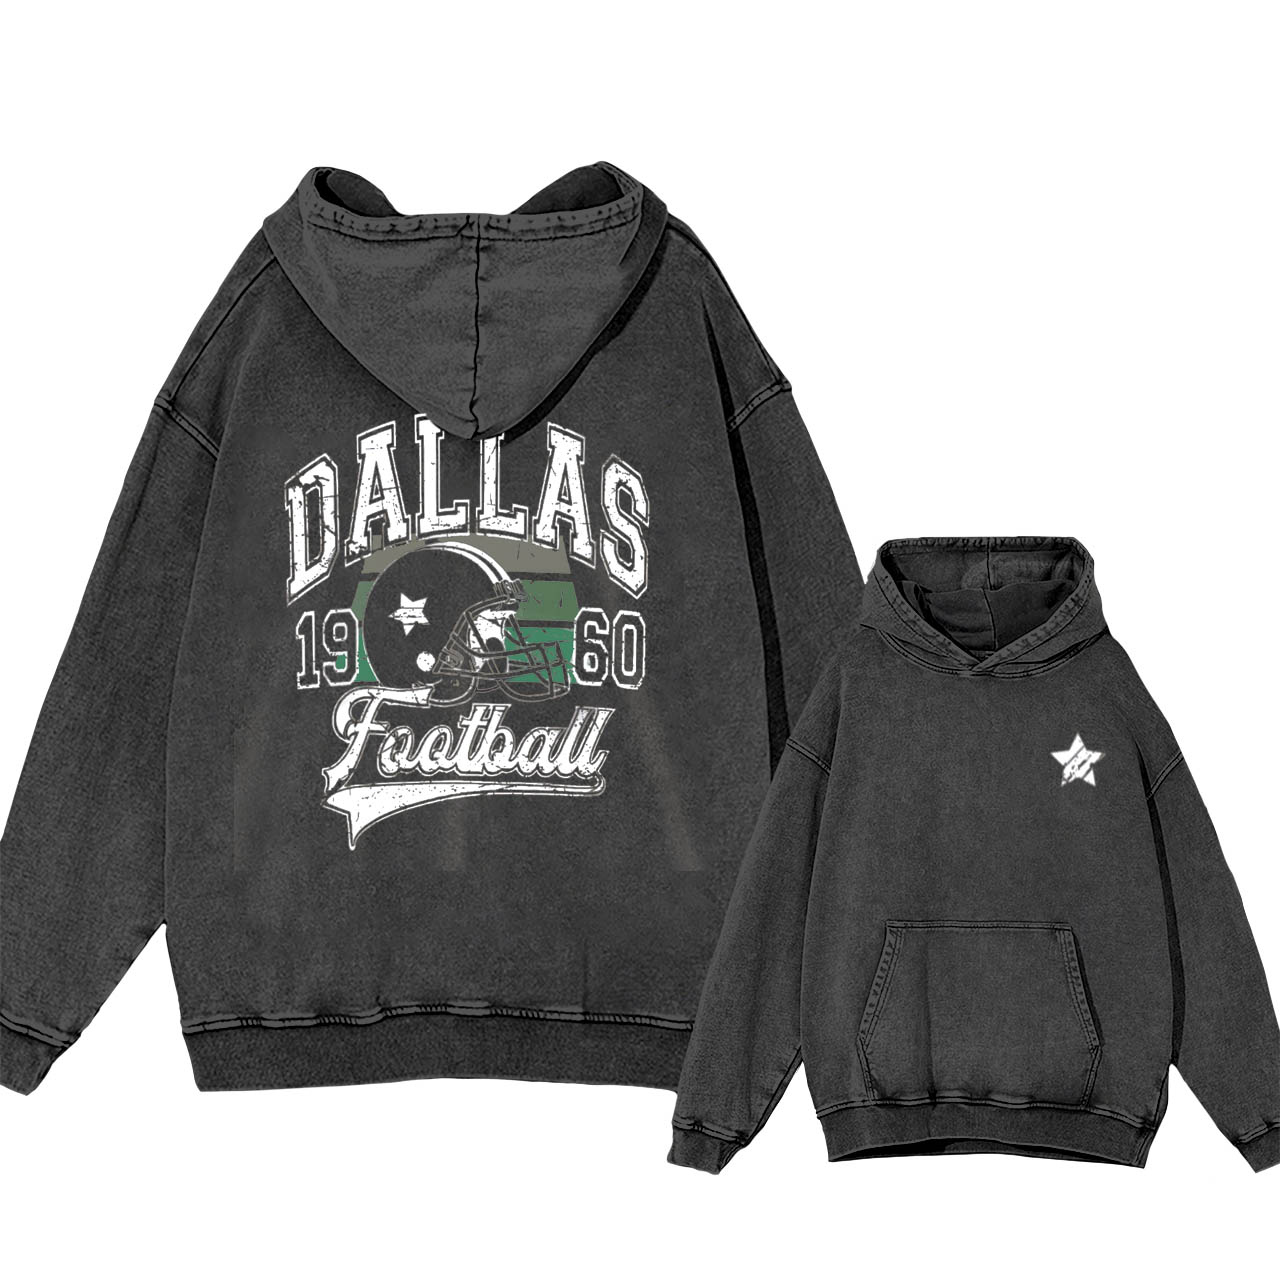 Dallas Cowboys Garment-Dye Hoodies